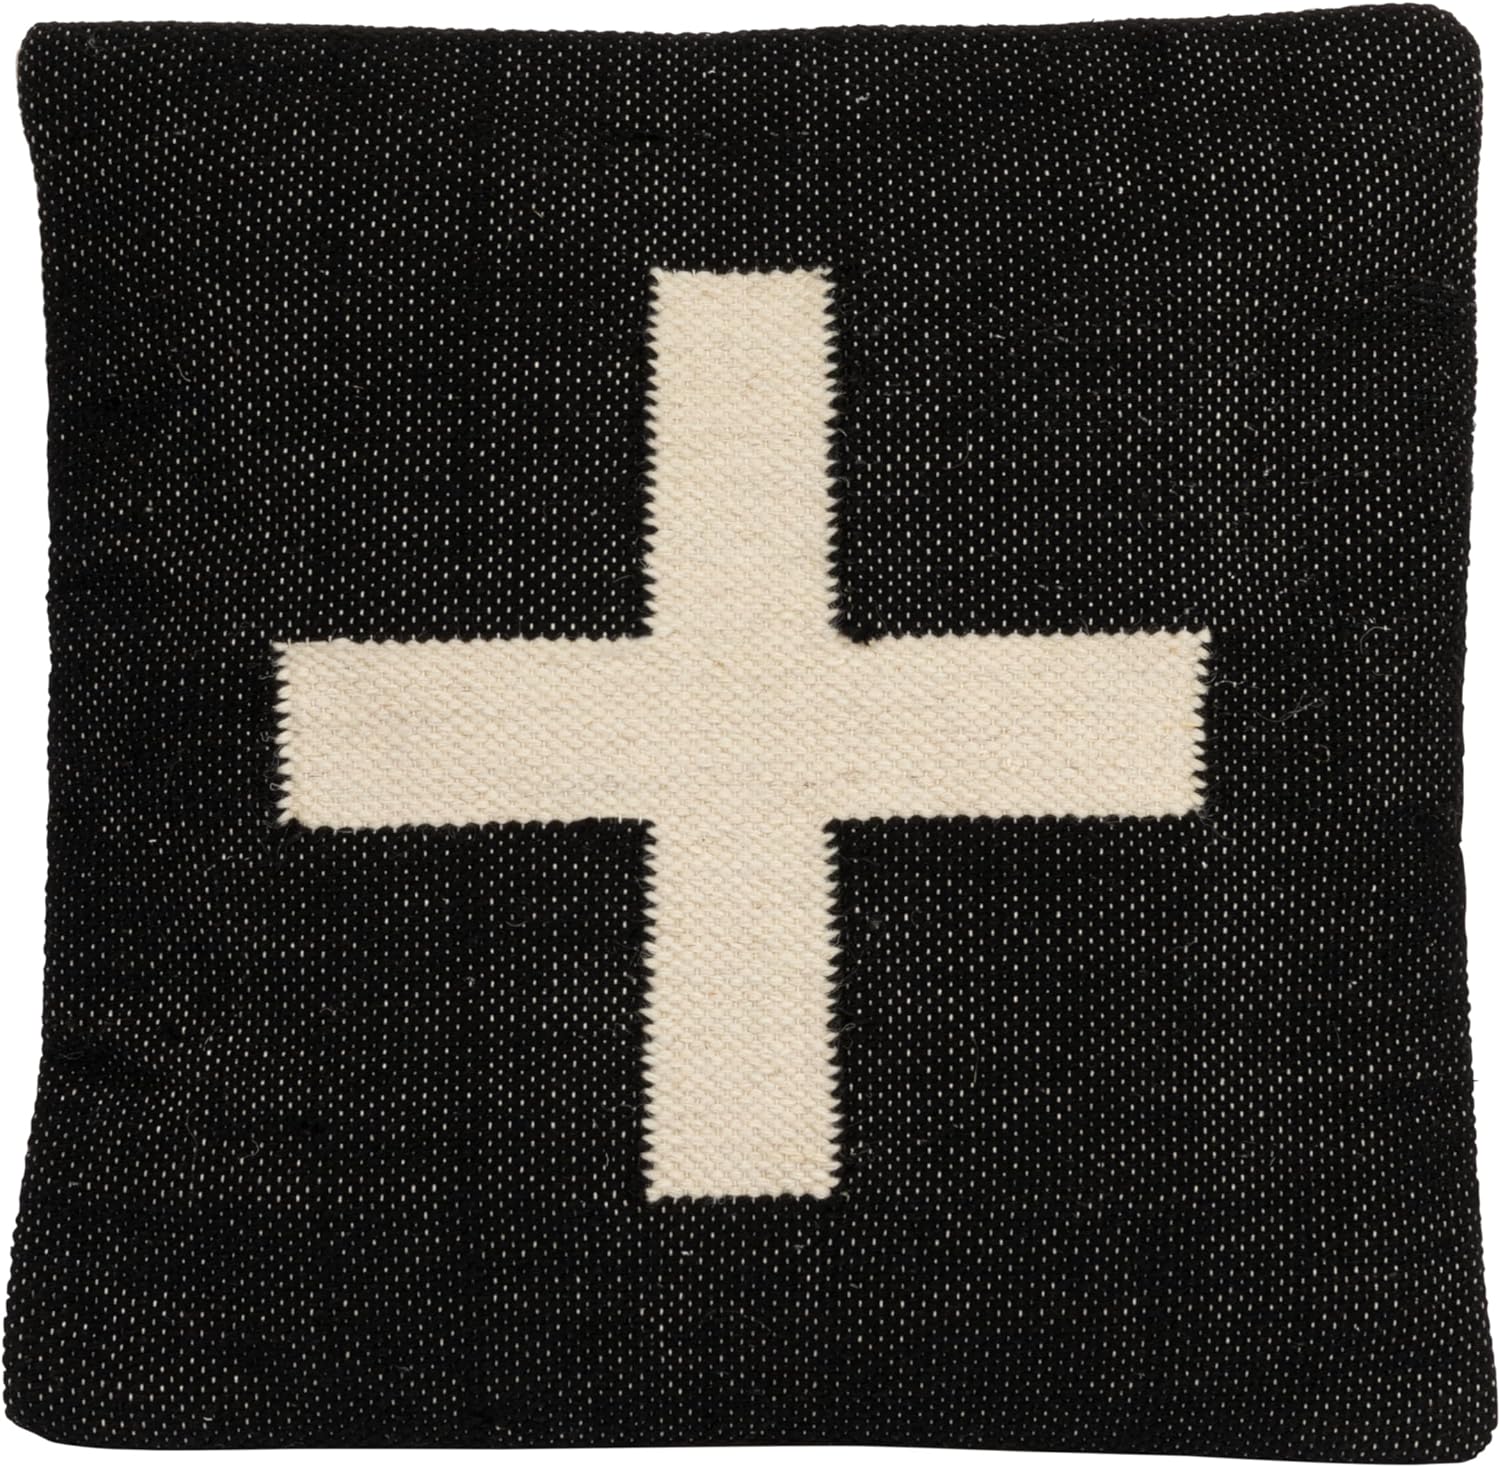 20" Wool Blend Pillow w/ Swiss Cross, Polyester Fill